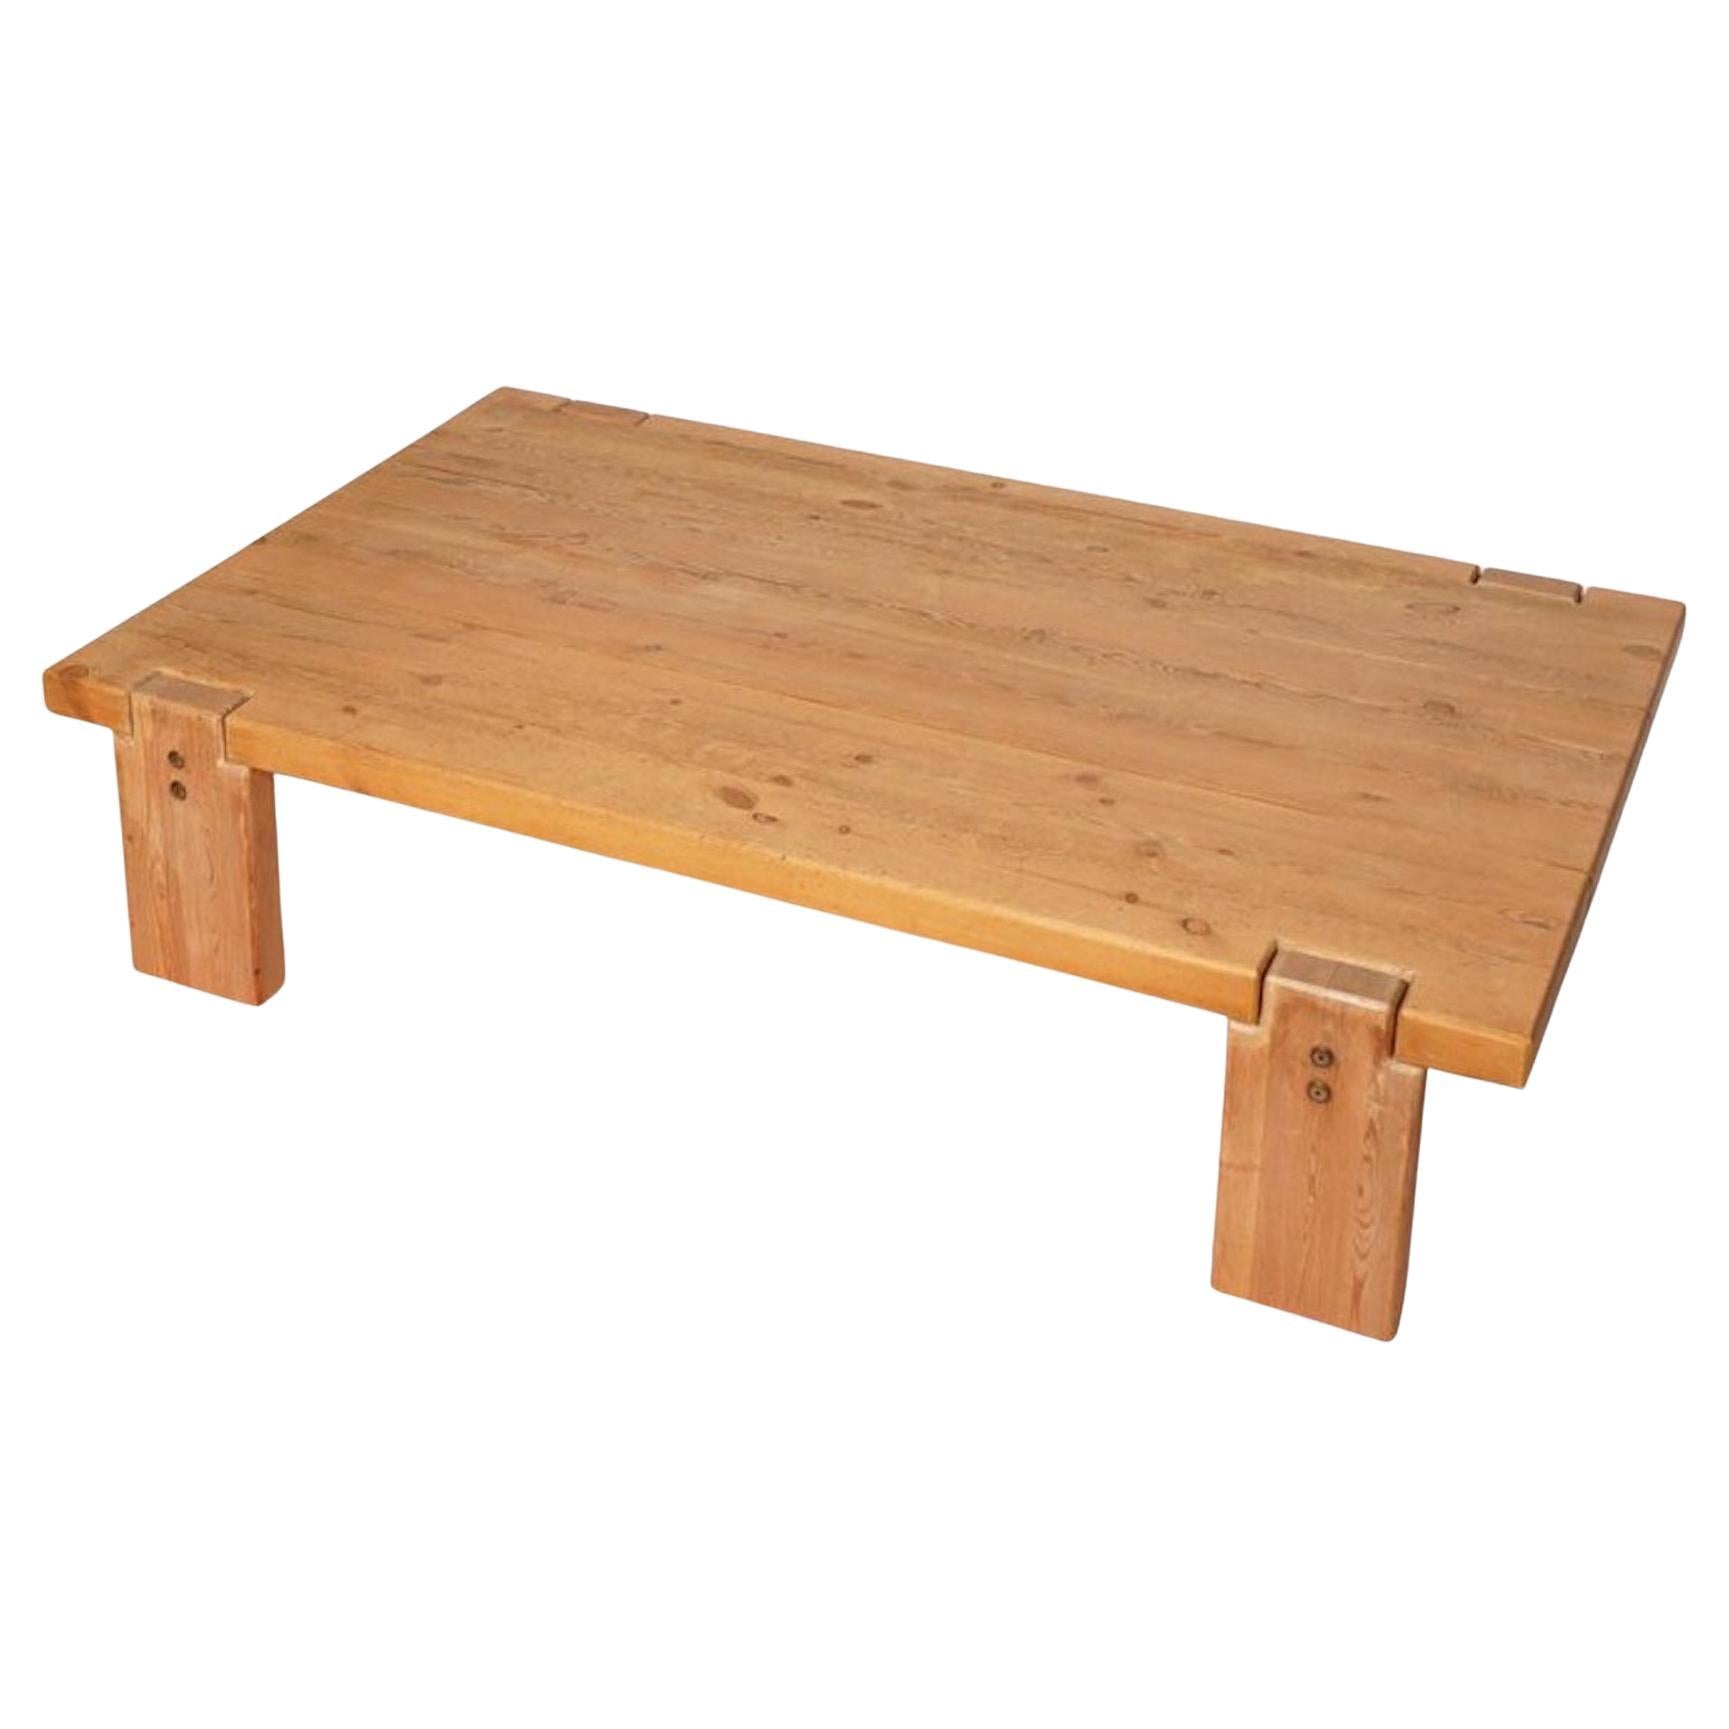 Swedish Pine Wood Low Coffee Table